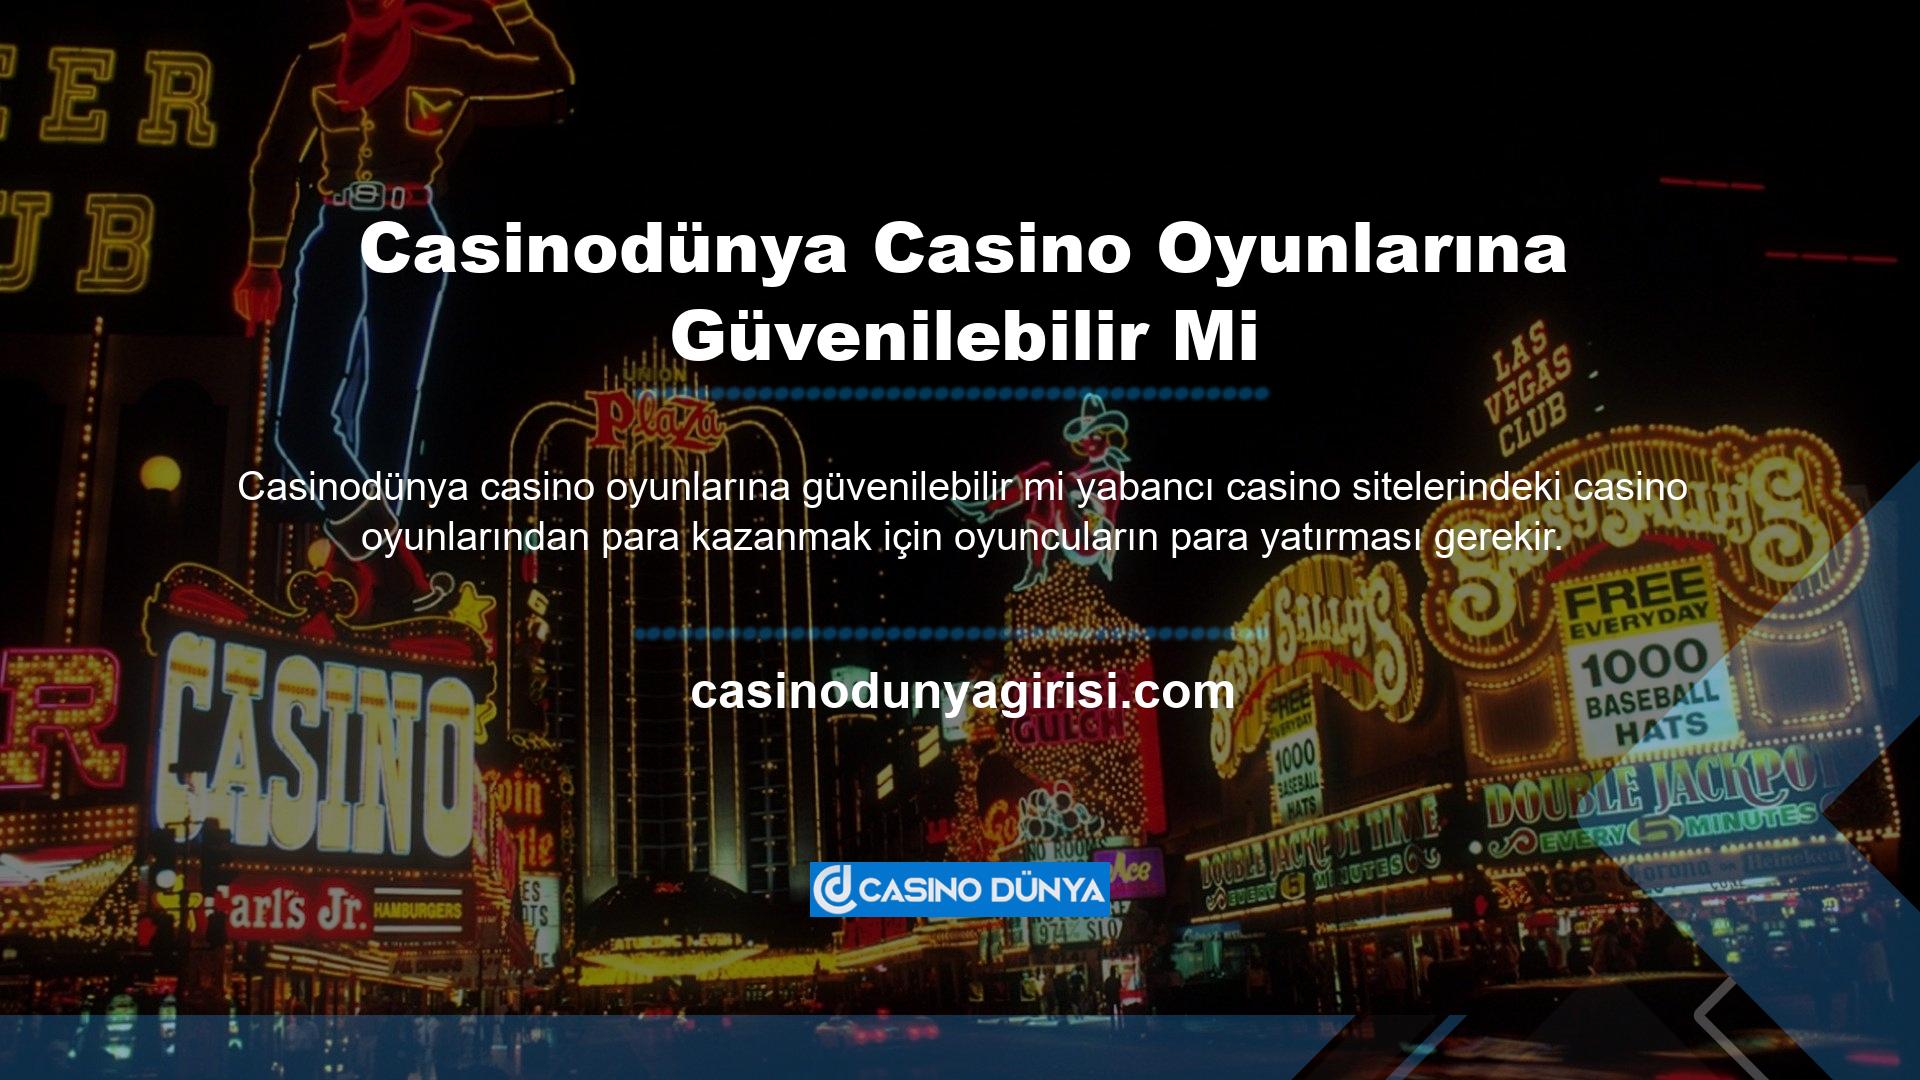 Casinodünya casino oyunlarına para yatırmak ne kadar güvenli? Casino oyunları oynarken Casinodünya web sitesine para yatırma konusunda herhangi bir sorun yaşanmamaktadır